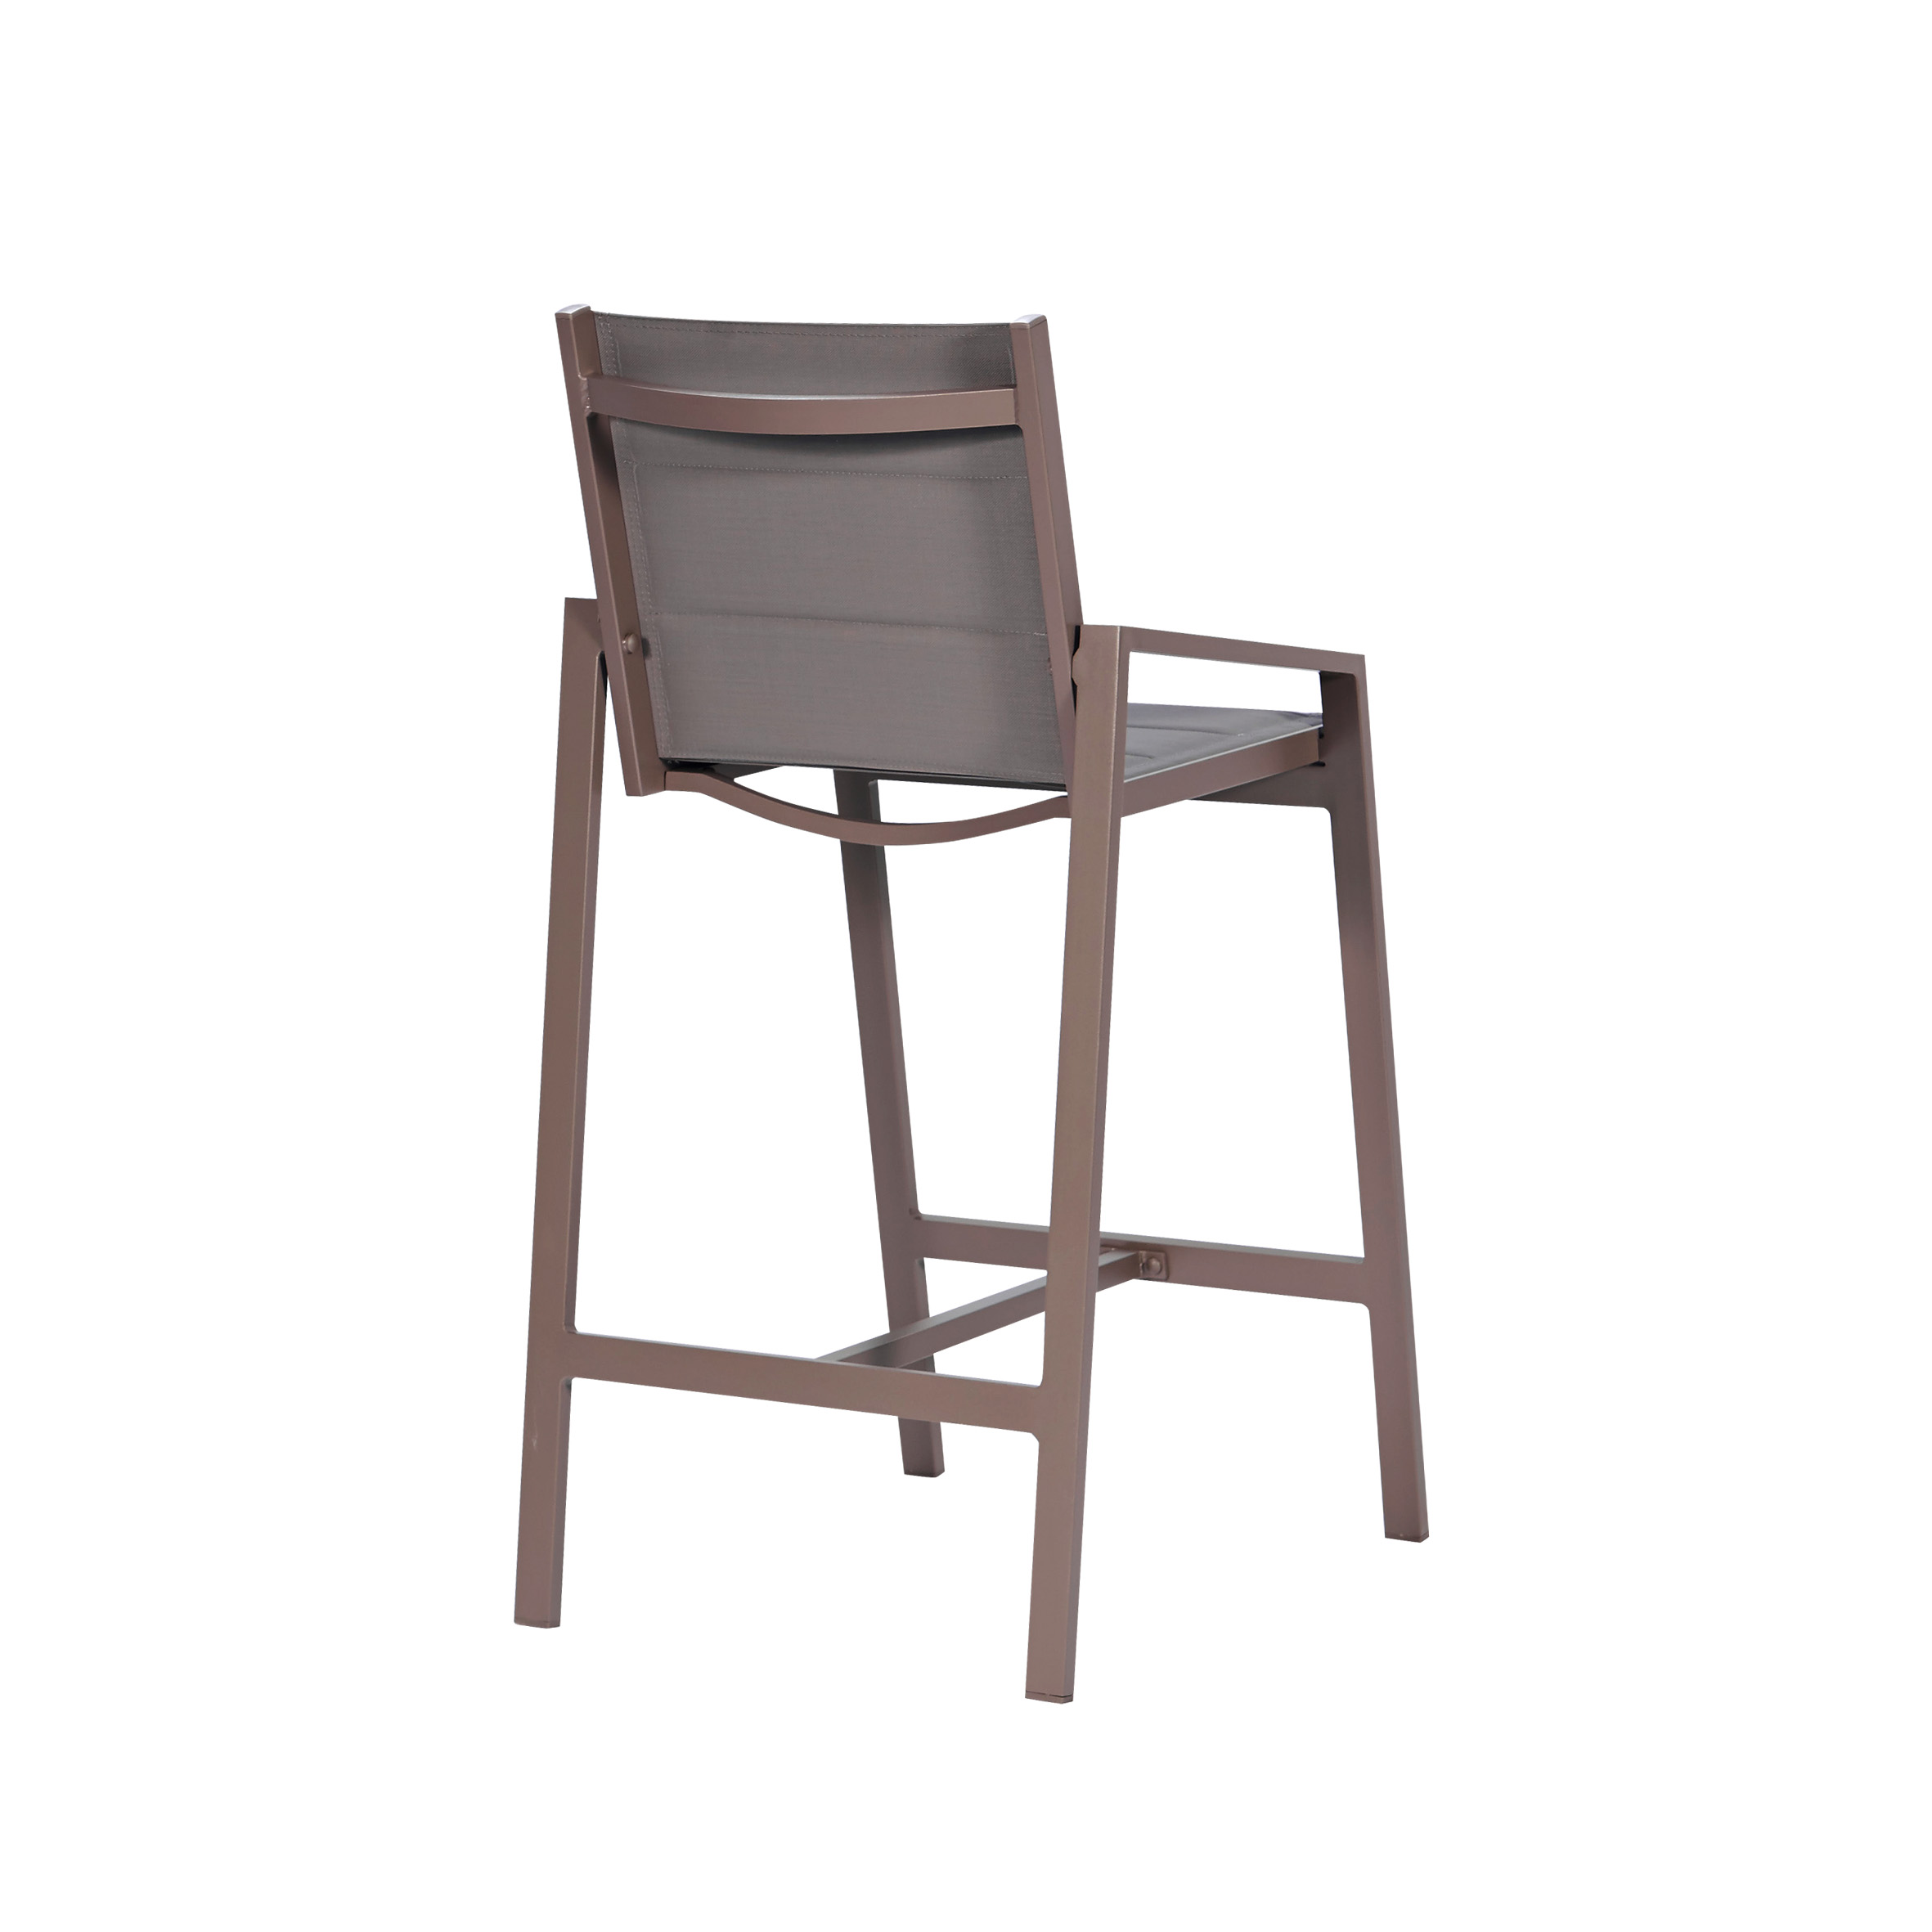 Snow white textile bar stool S3